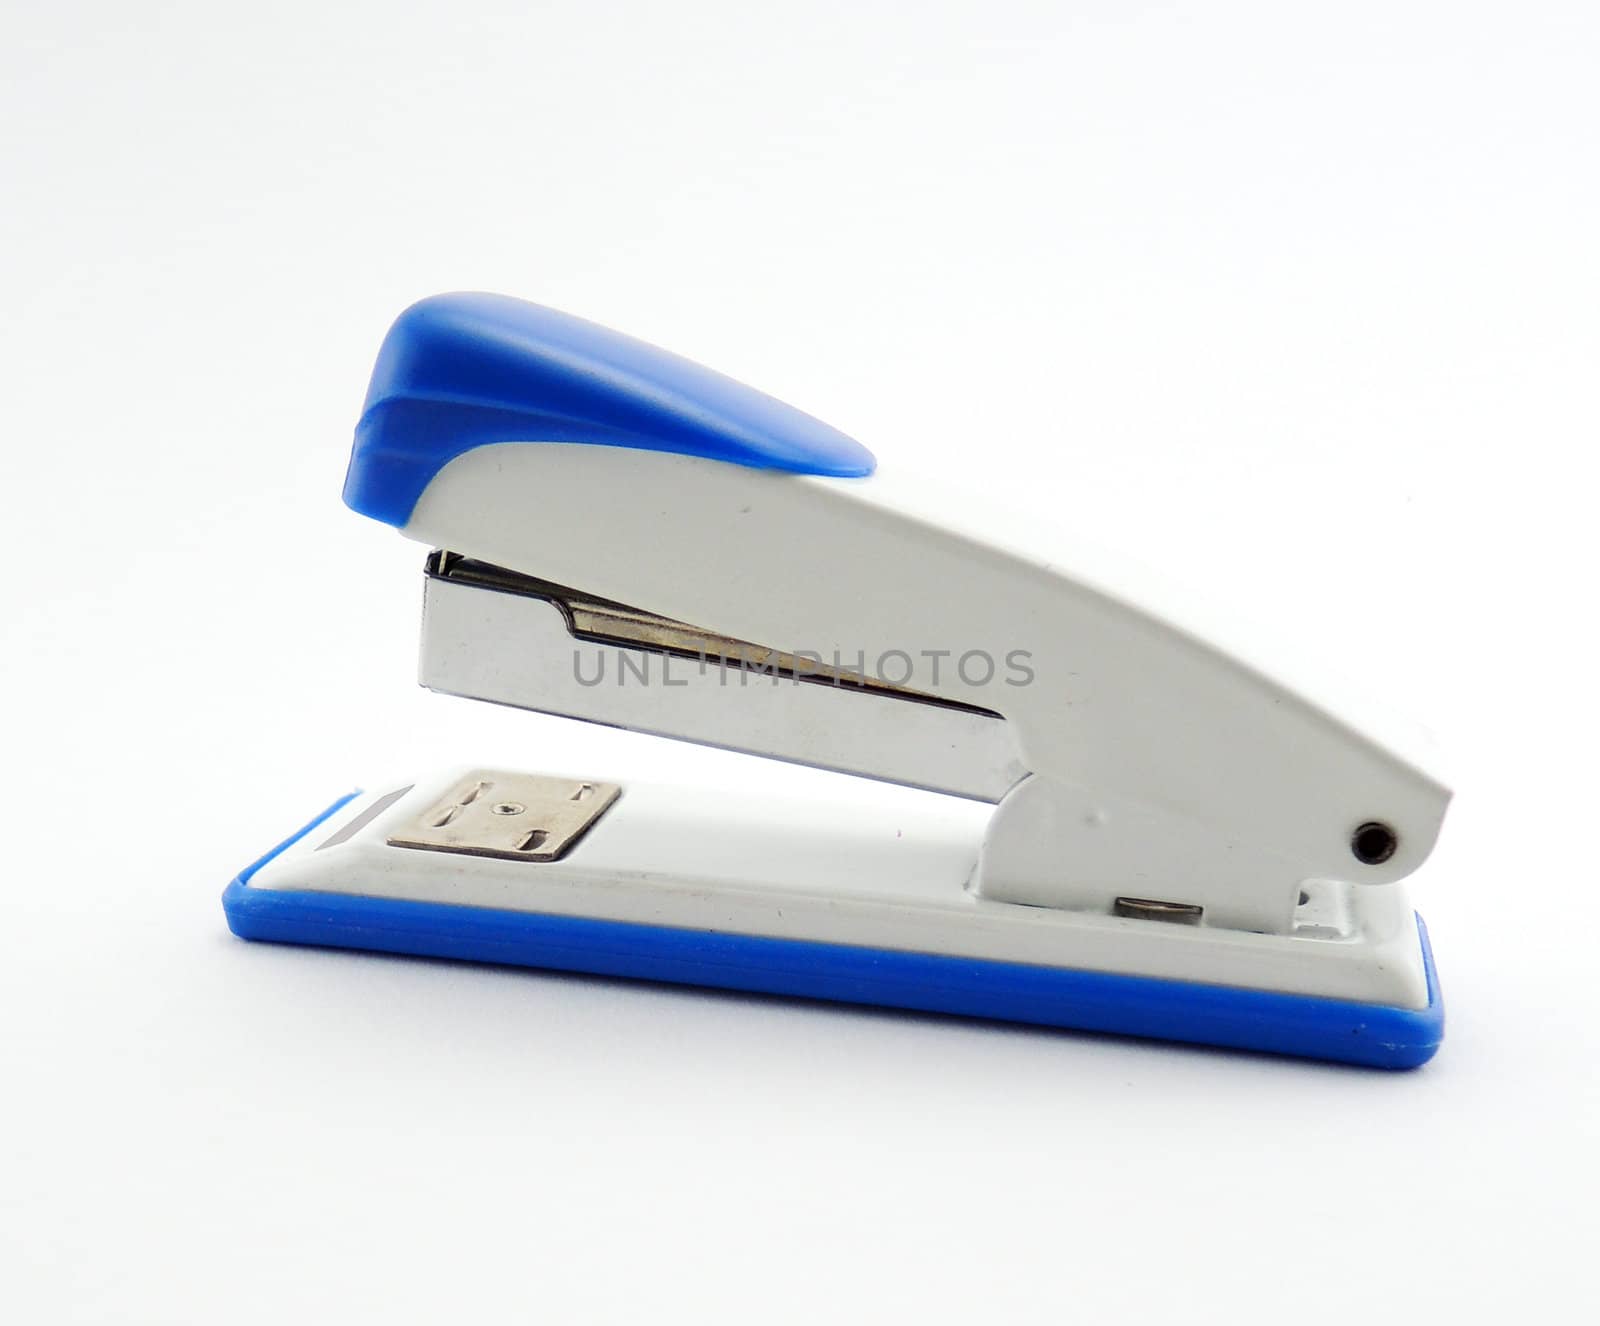 Blue stapler on white background